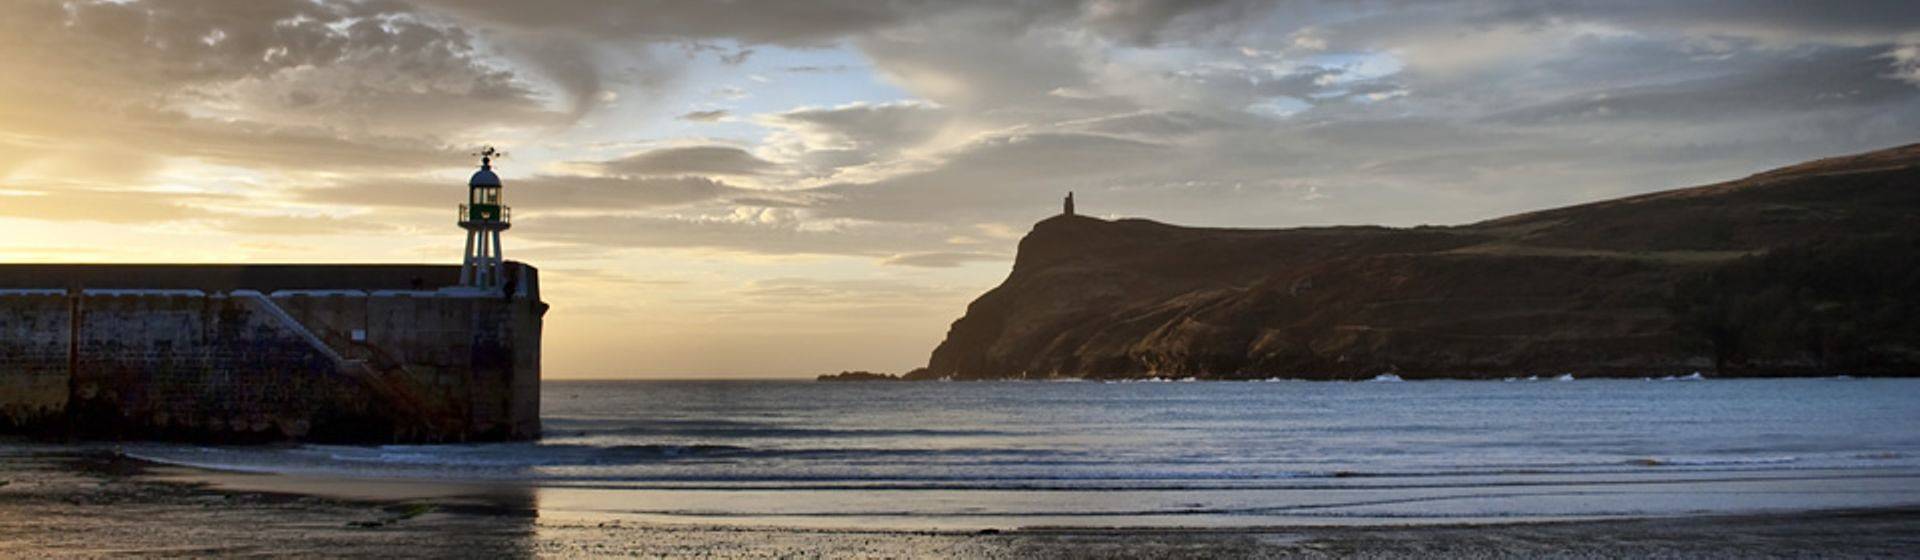 Holidays to Isle of Man Image